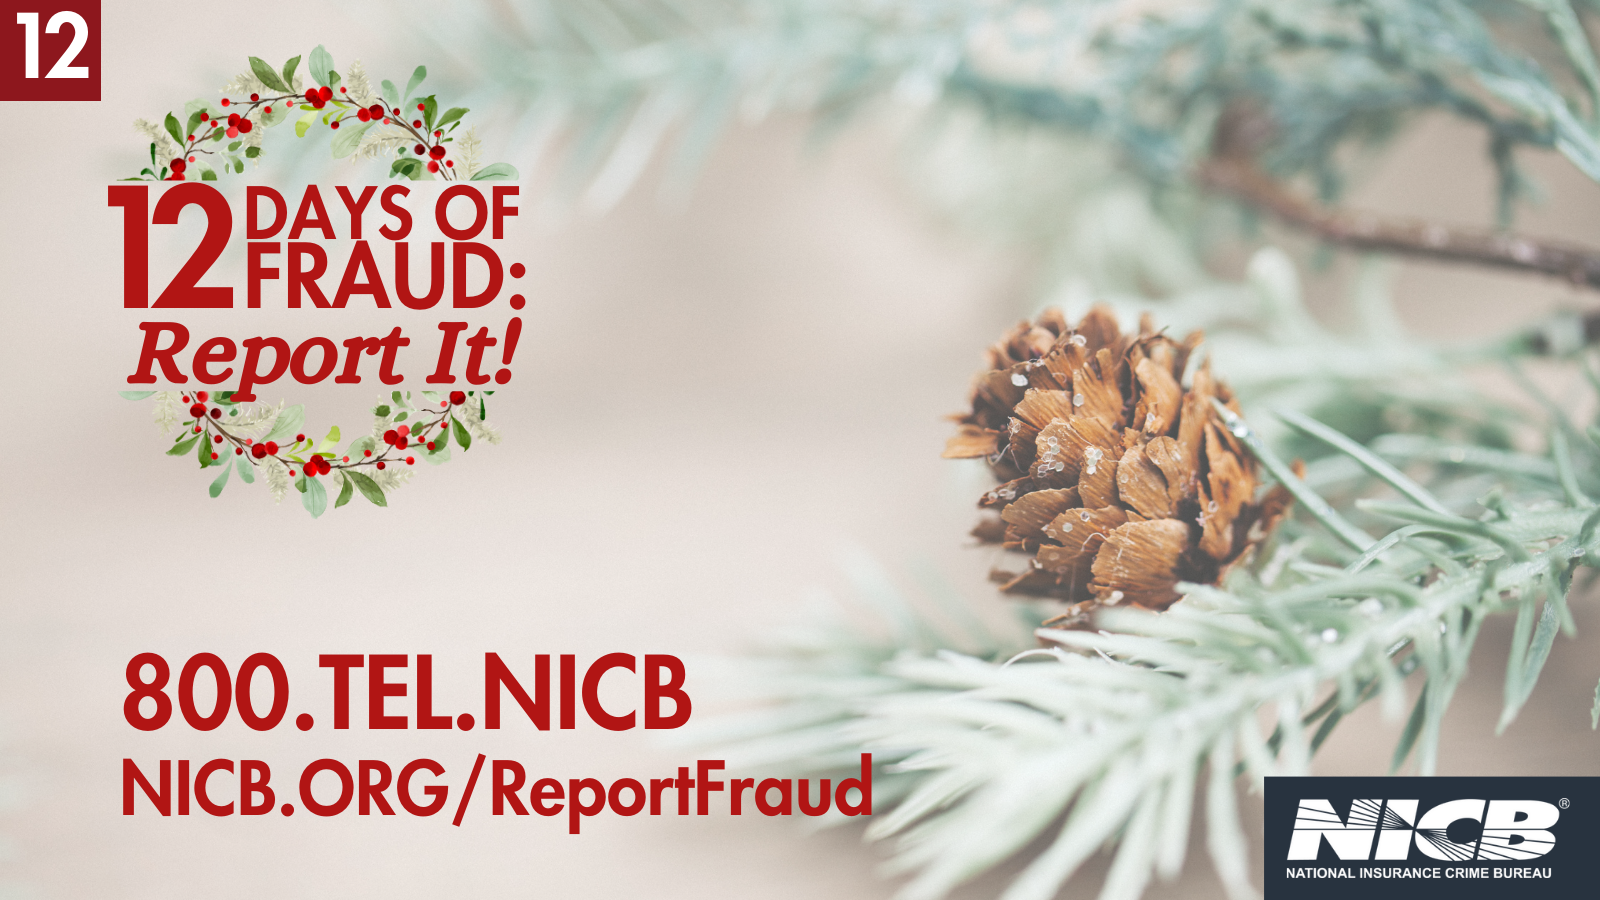 NICB.org/ReportFraud